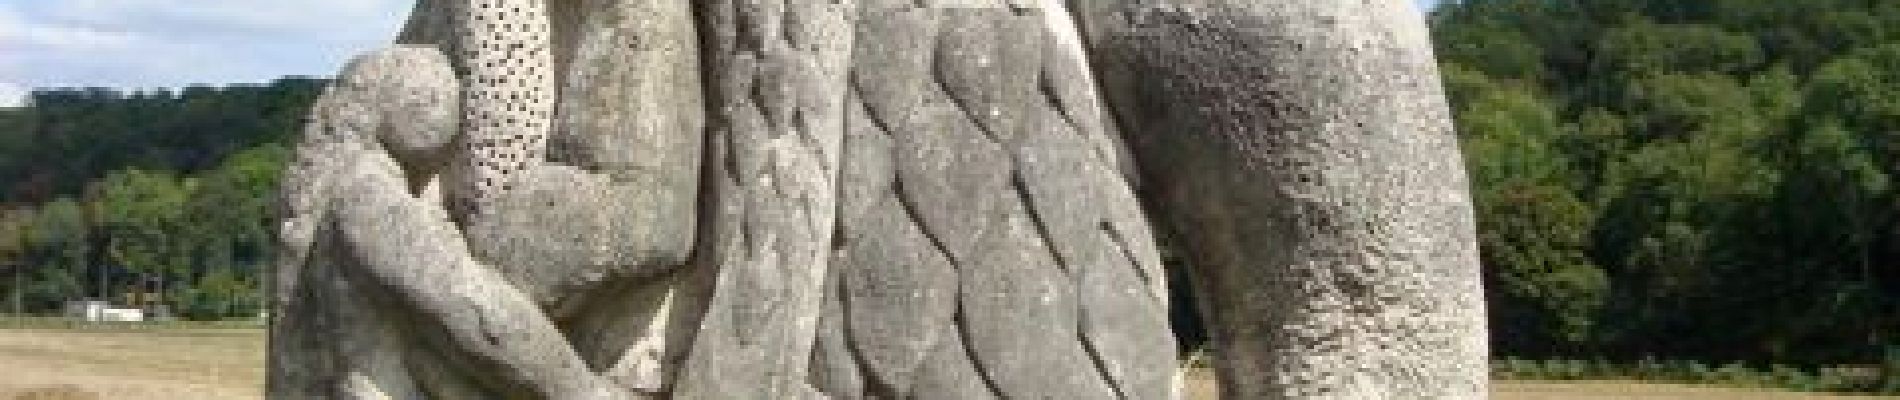 Point d'intérêt Chessy - Sculptures de la Dhuys - Photo